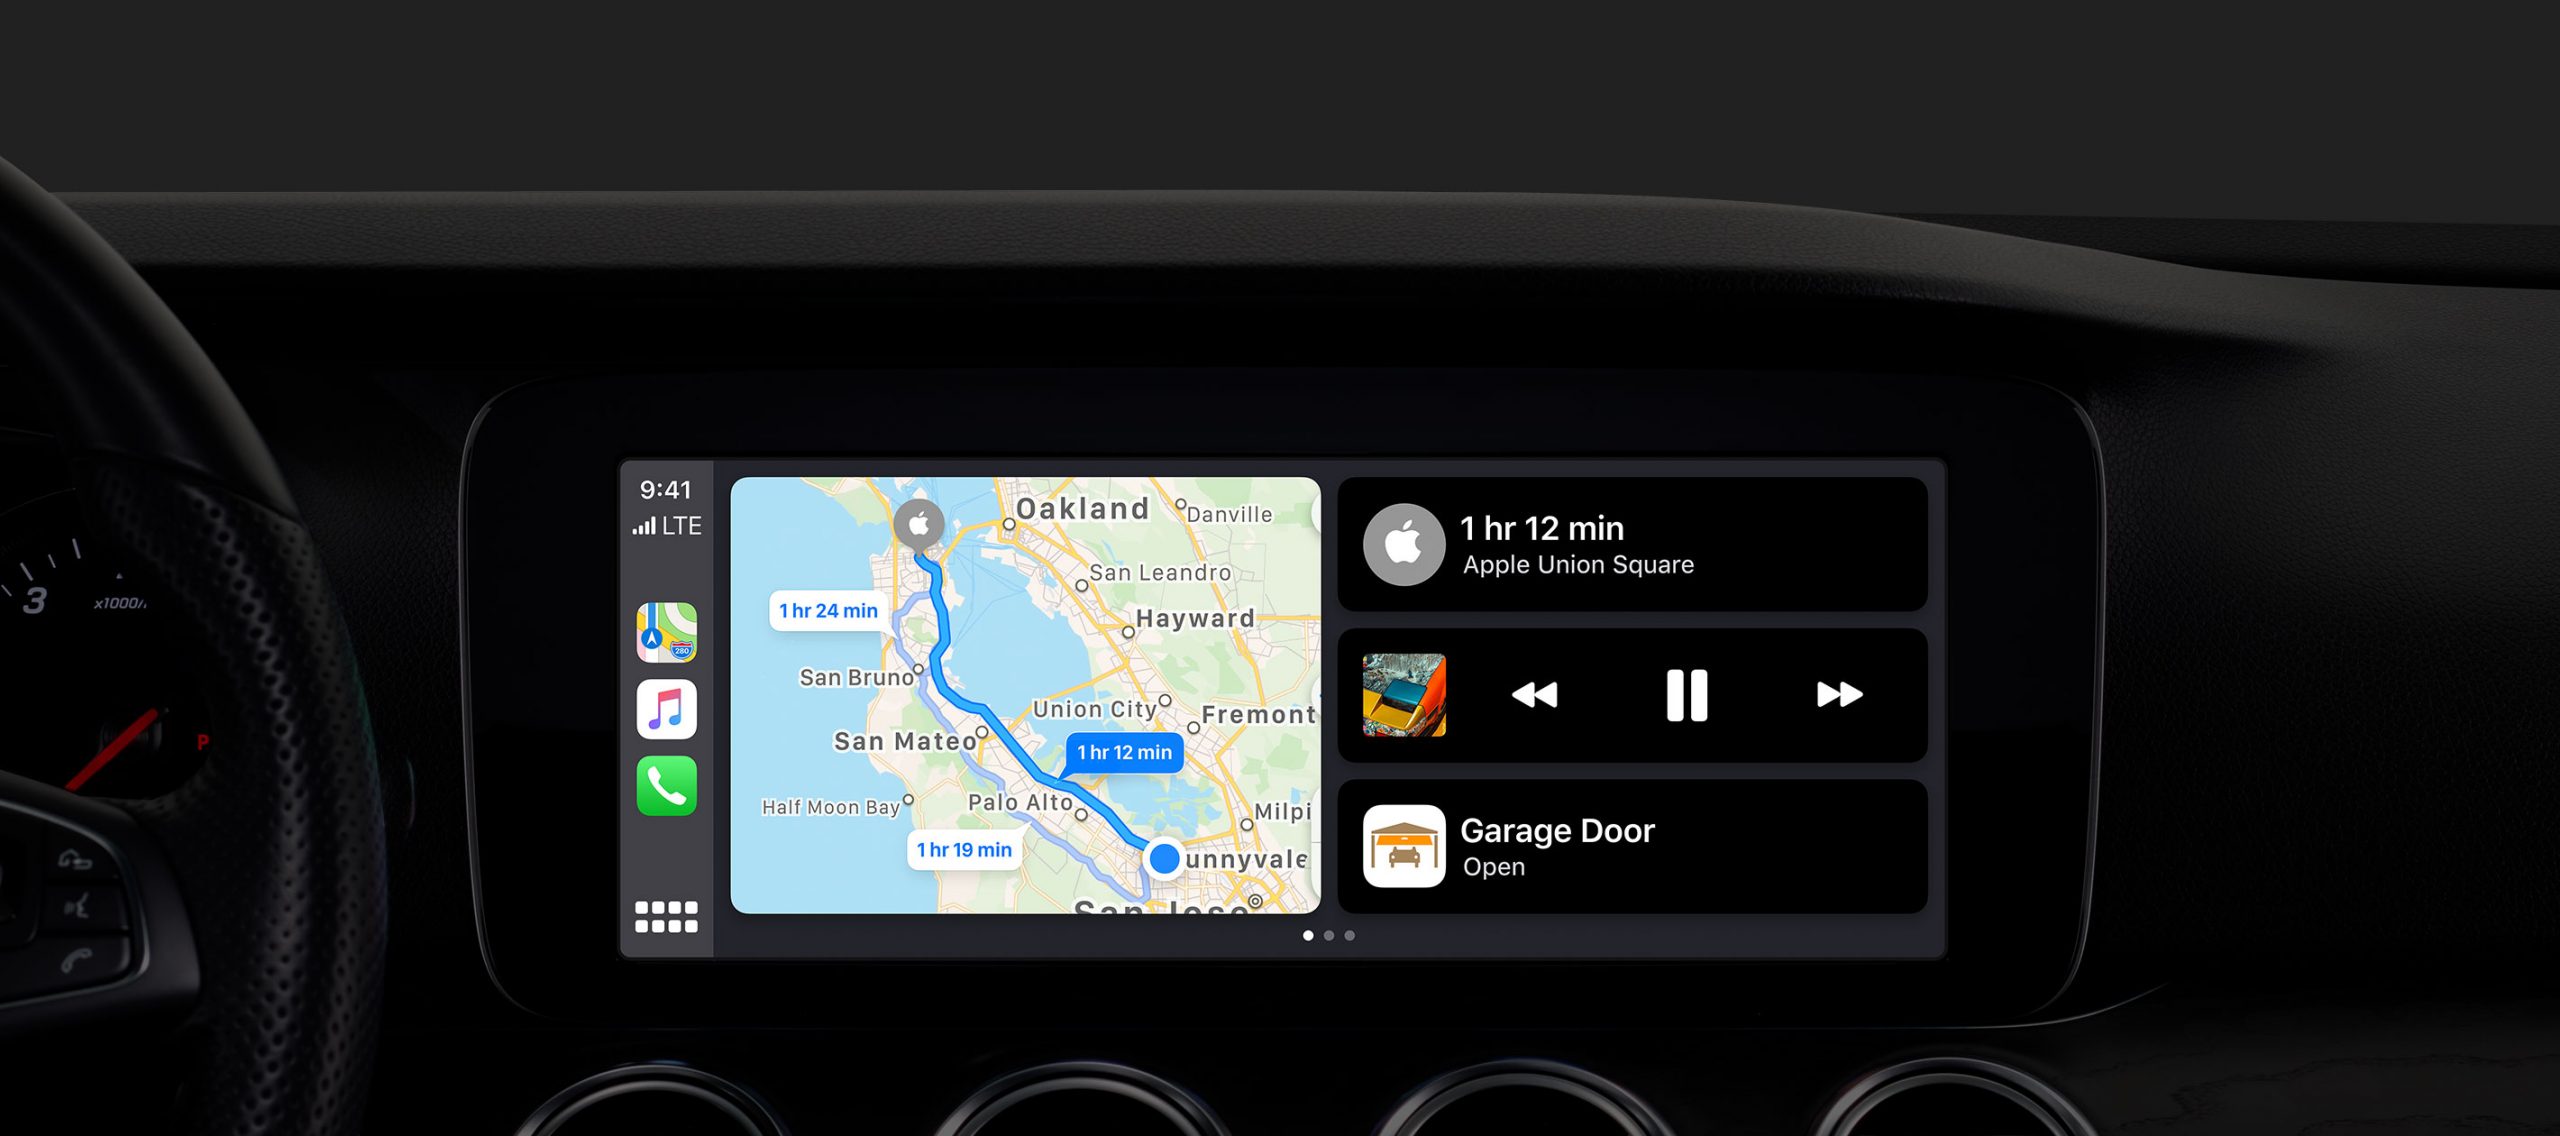 iOS 13: CarPlay sees, uus liides ja funktsioonid